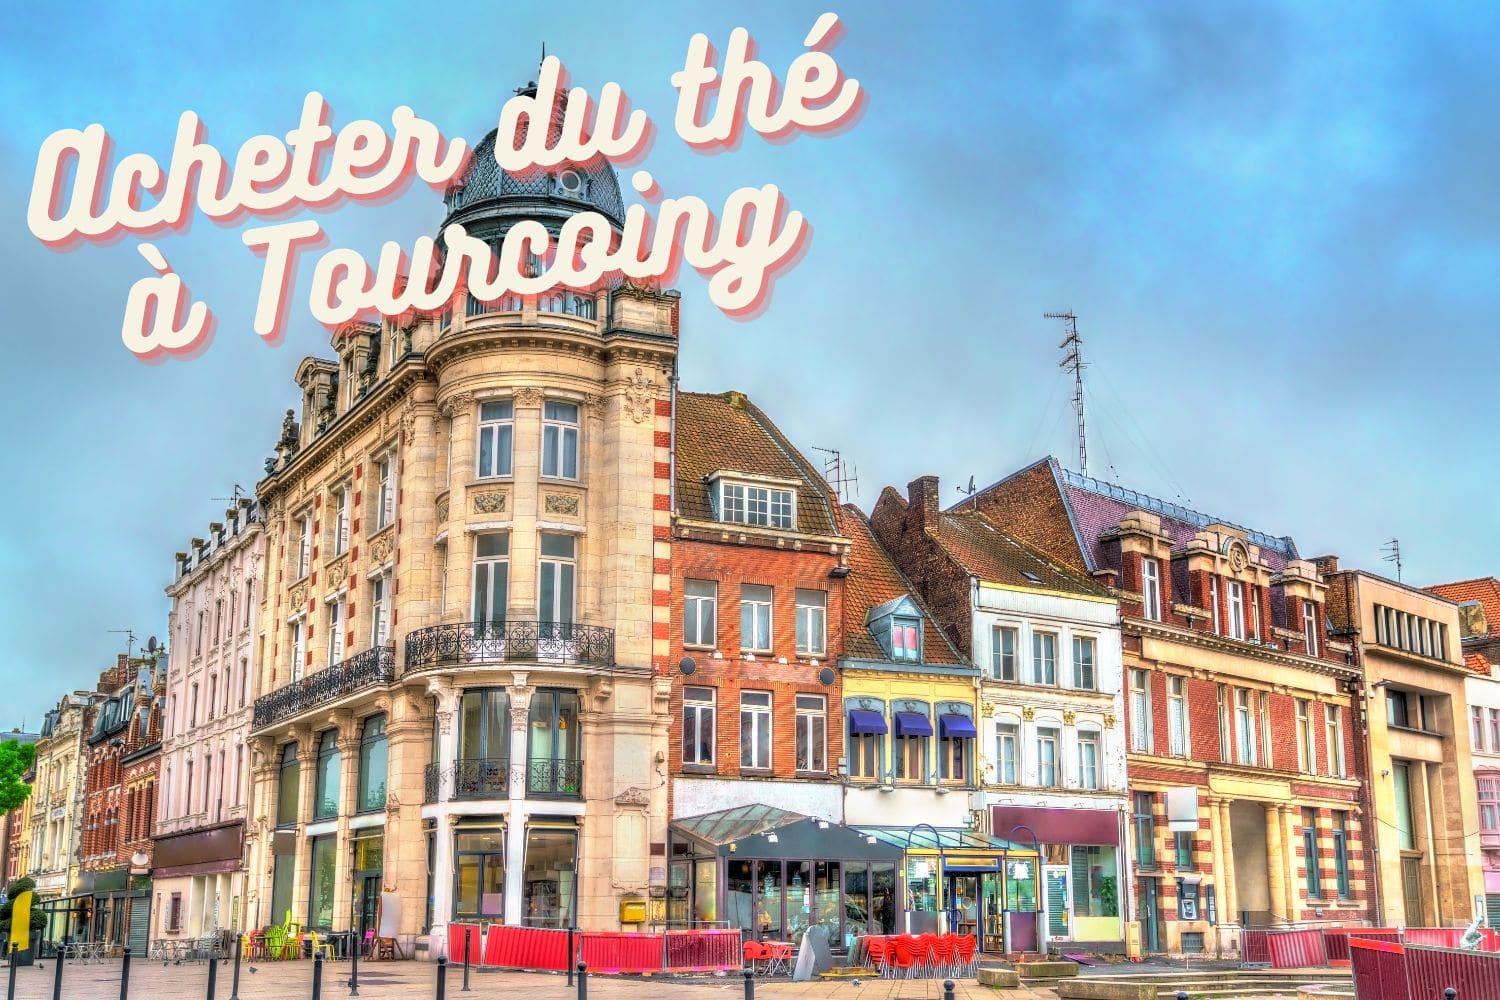 Acheter du thé à Tourcoing : magasins et salons de thé, nos bonnes adresses